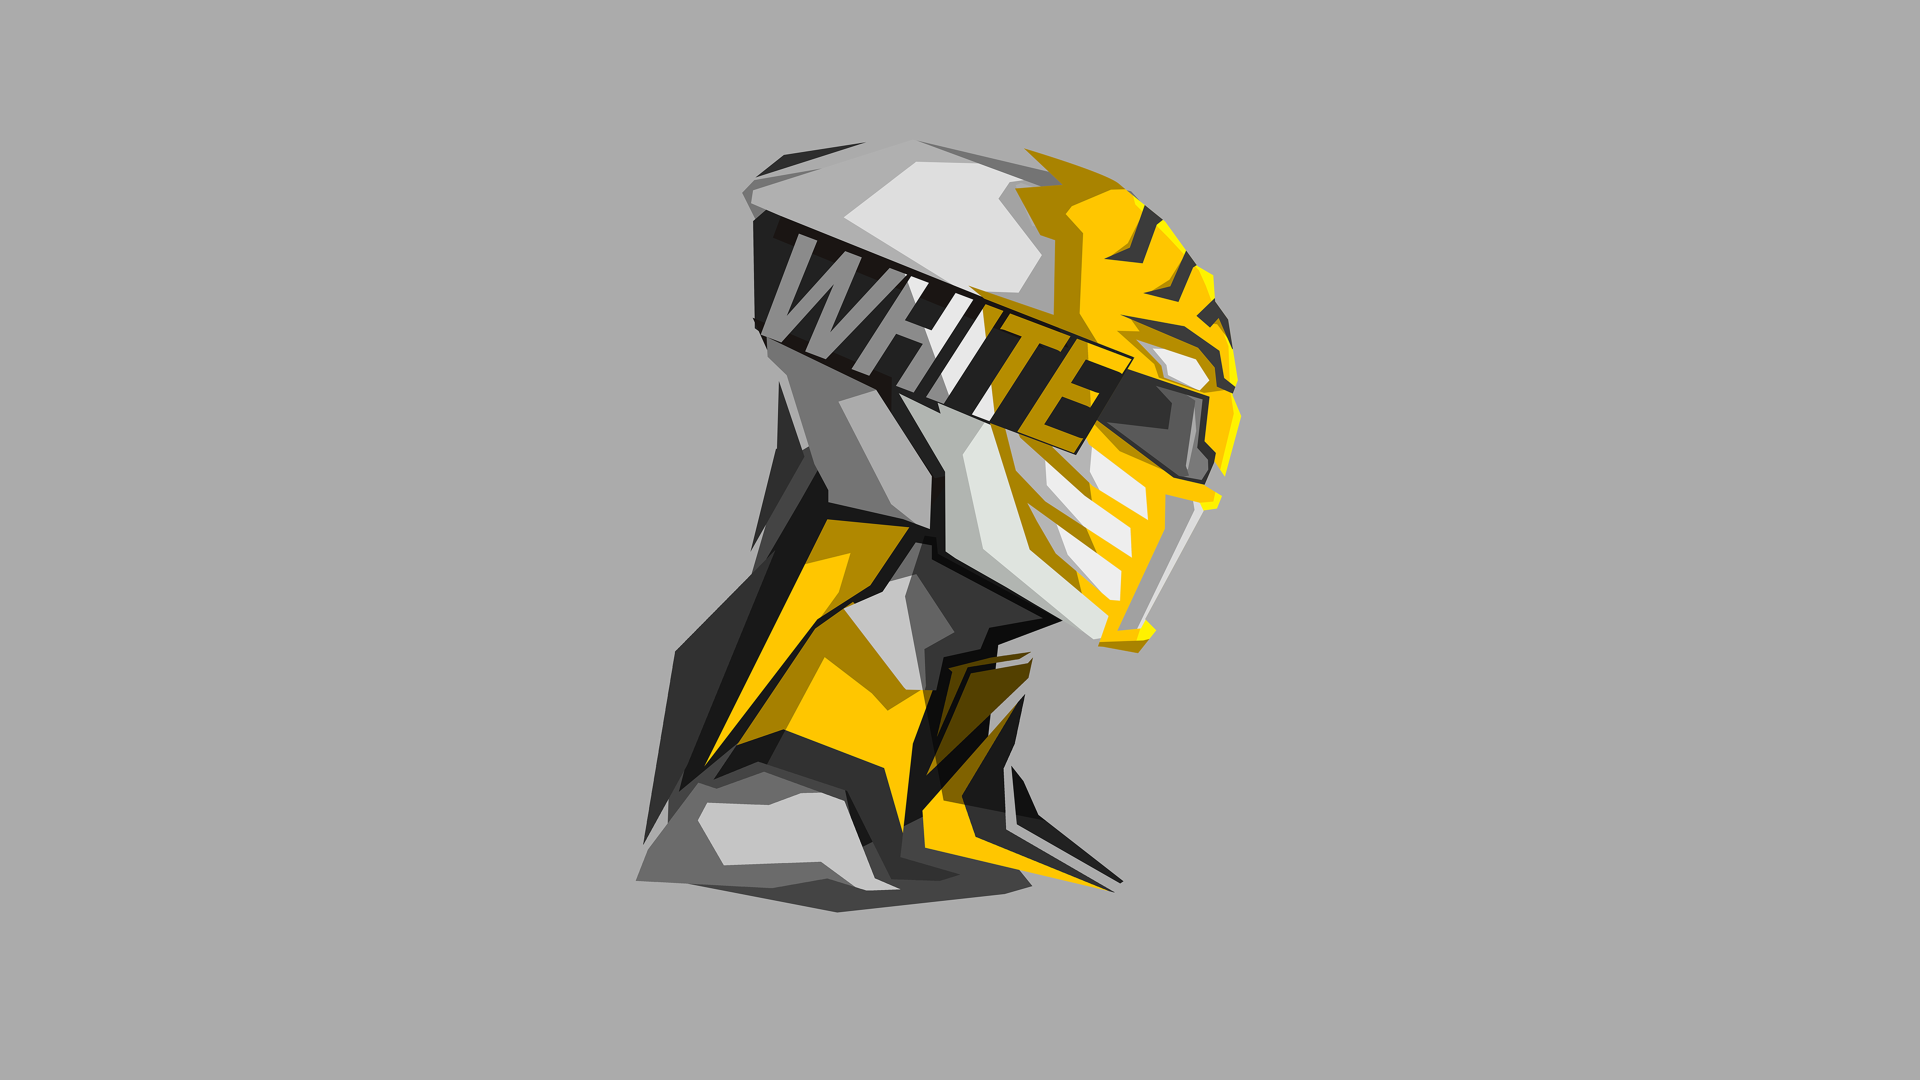 white ranger wallpaper,helmet,yellow,personal protective equipment,logo,illustration